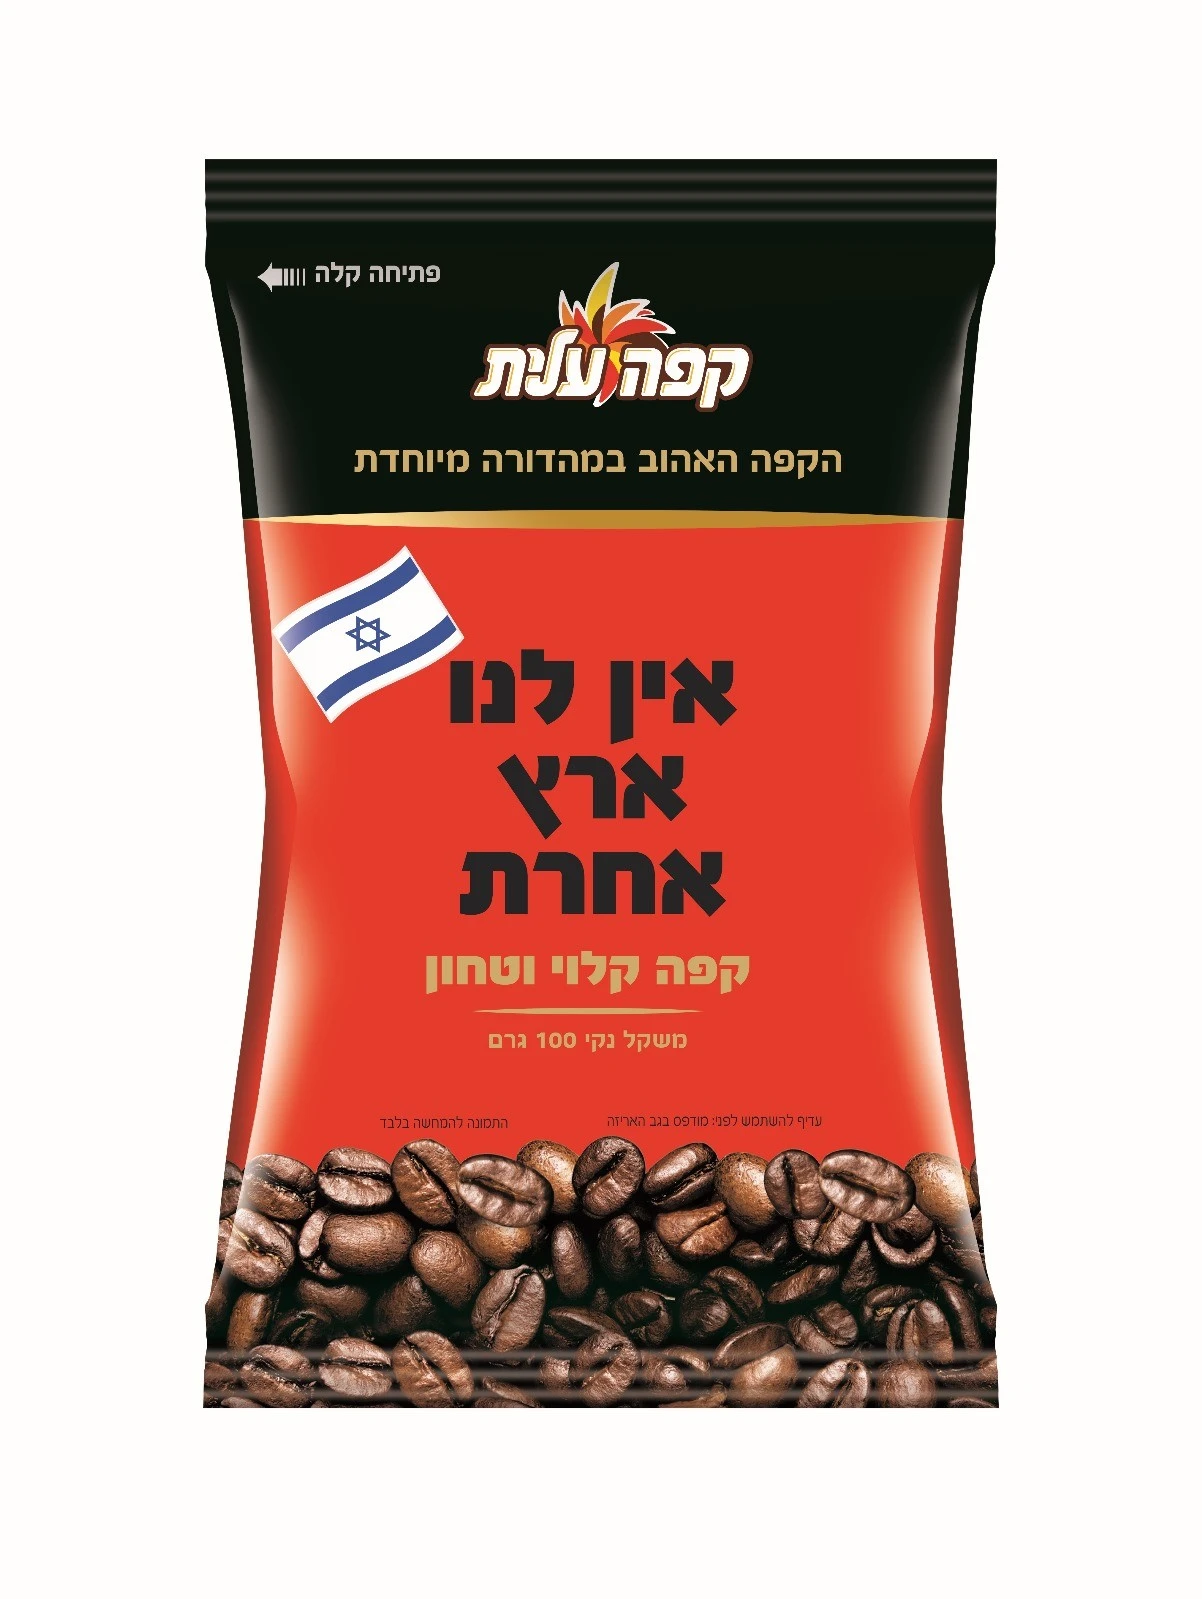 במקום קפה טורקי - קפה ישראלי במהדורה מיוחדת.